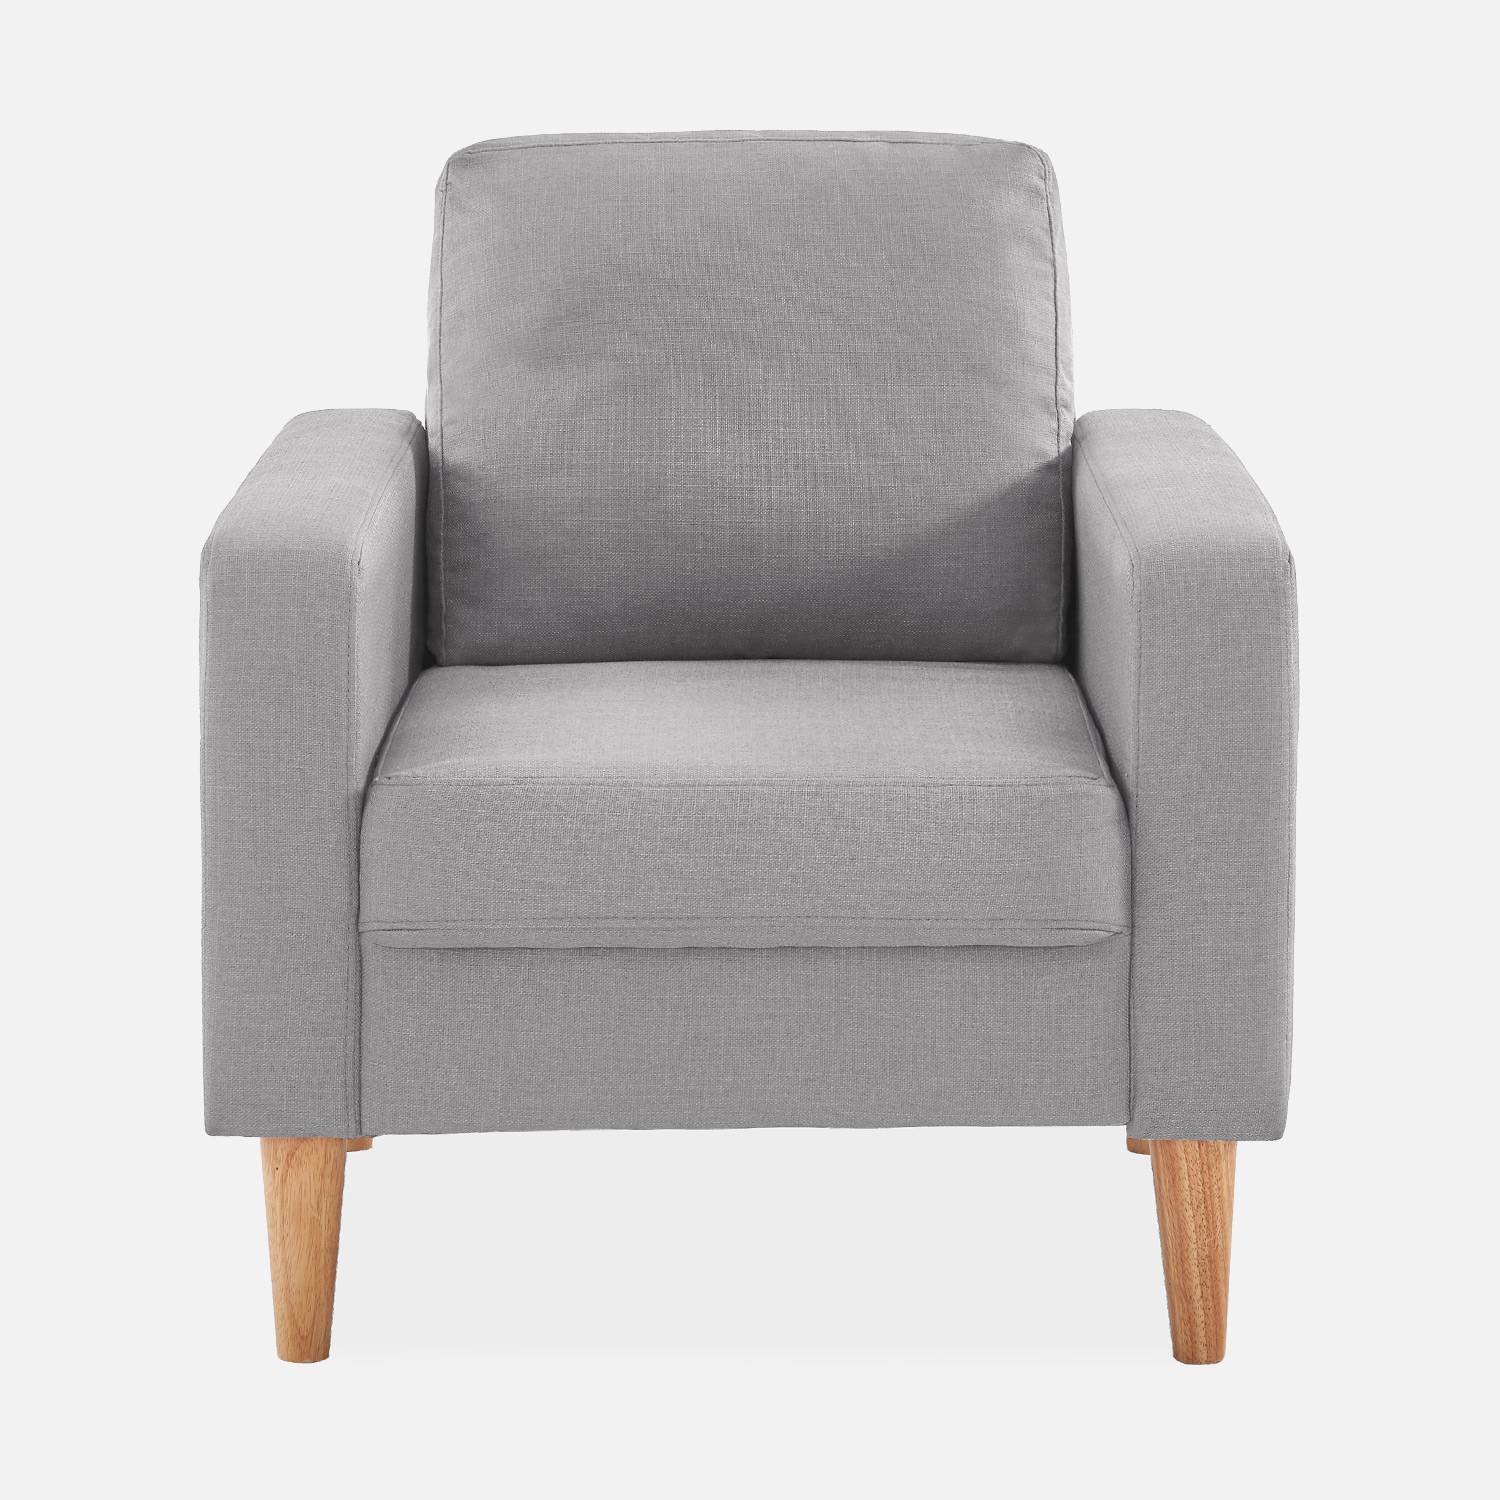 Lichtgrijs stoffen armstoel - Bjorn - 1-zits sofa met houten poten, Scandinavische stijl Photo3